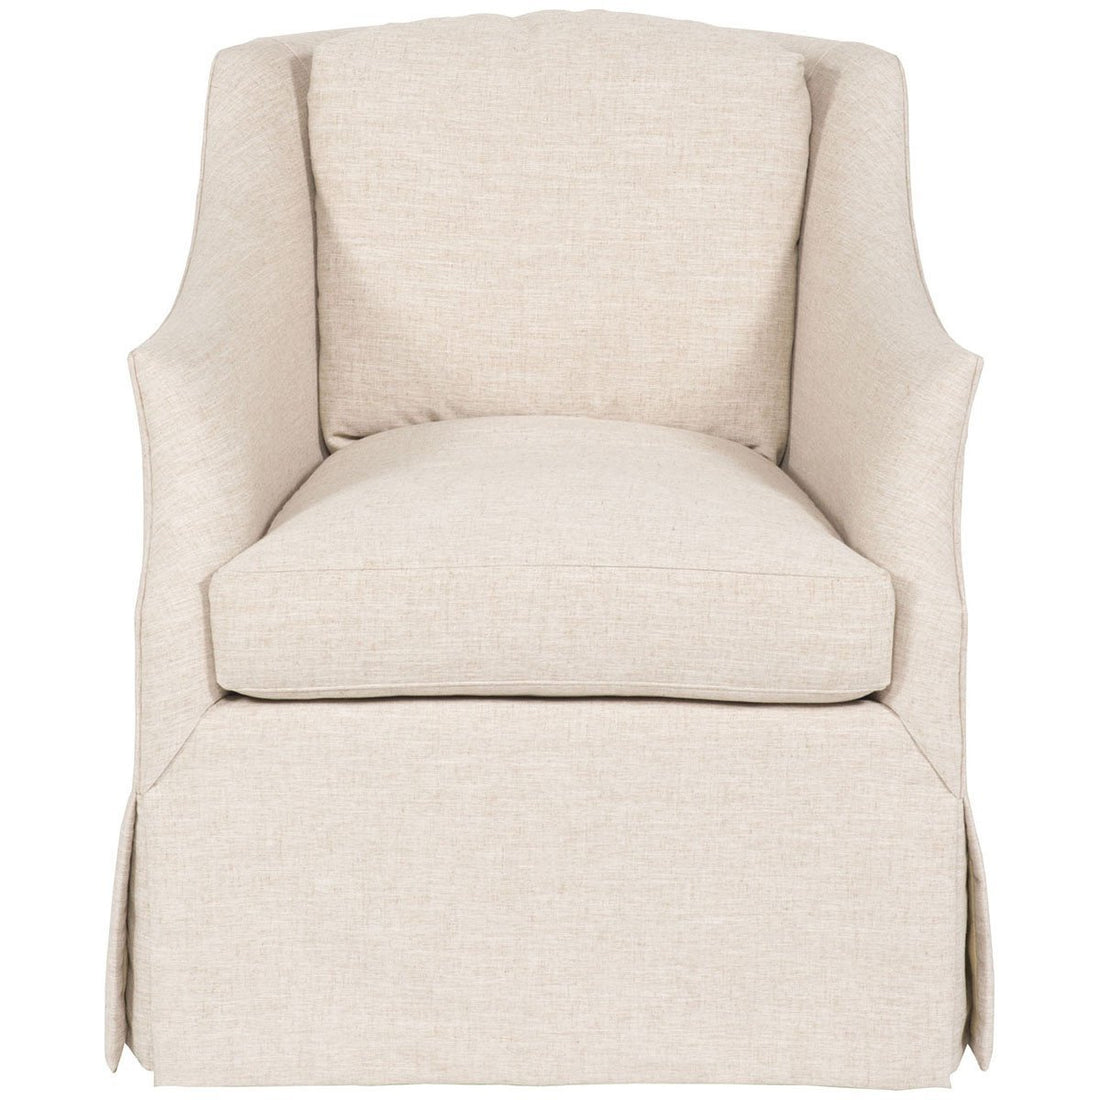 Vanguard Furniture Neeley Oatmeal Abigail Waterfall Skirt Swivel Chair